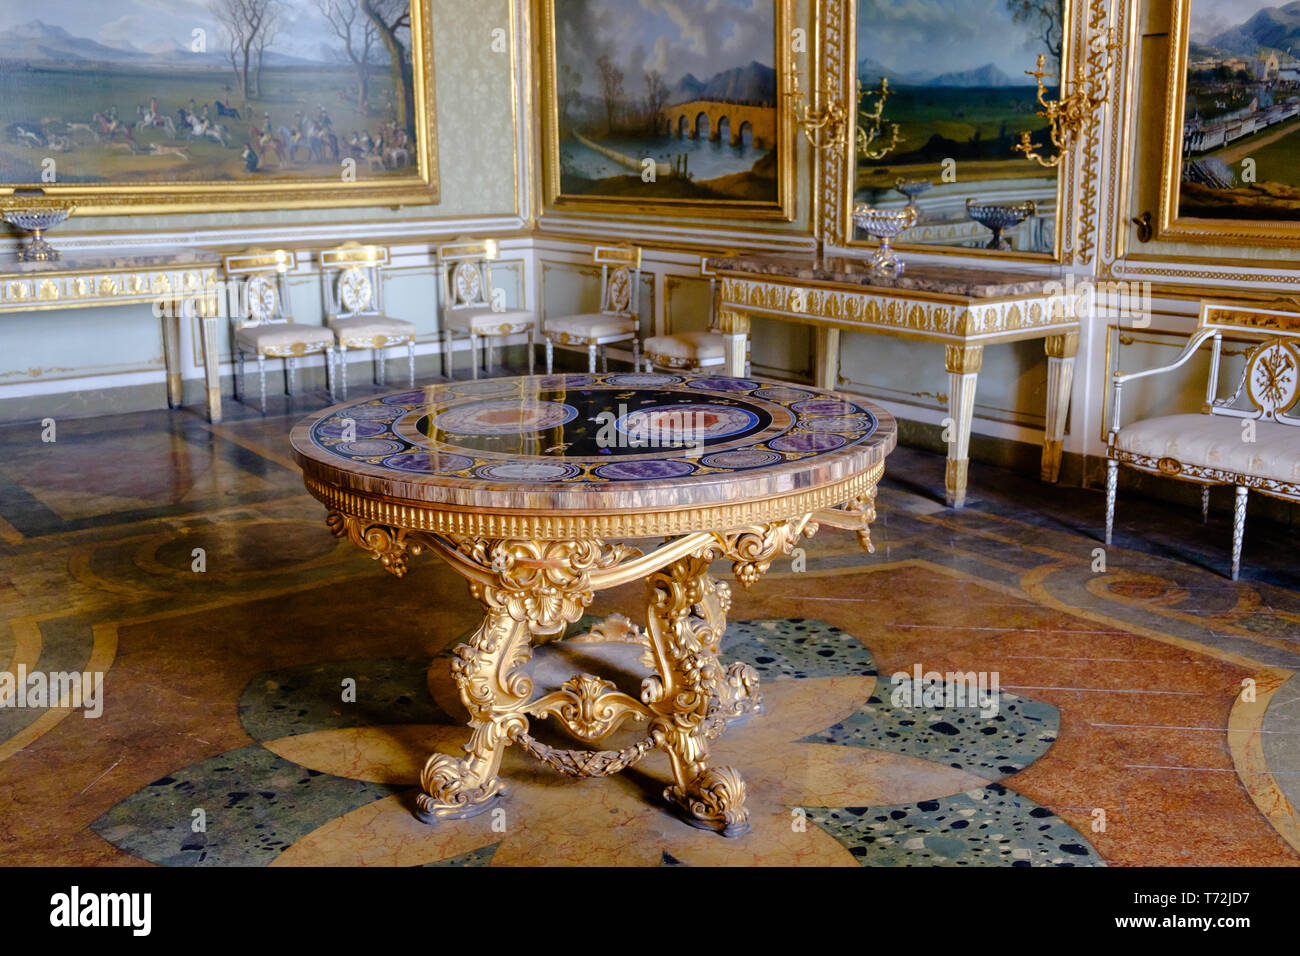 Eine neo-barocken Tabelle mit einem harten Stein table-top steht in einem königlichen Appartements der "Reggia di Caserta'. Bilder und Möbel komplett den Reichtum. Stockfoto